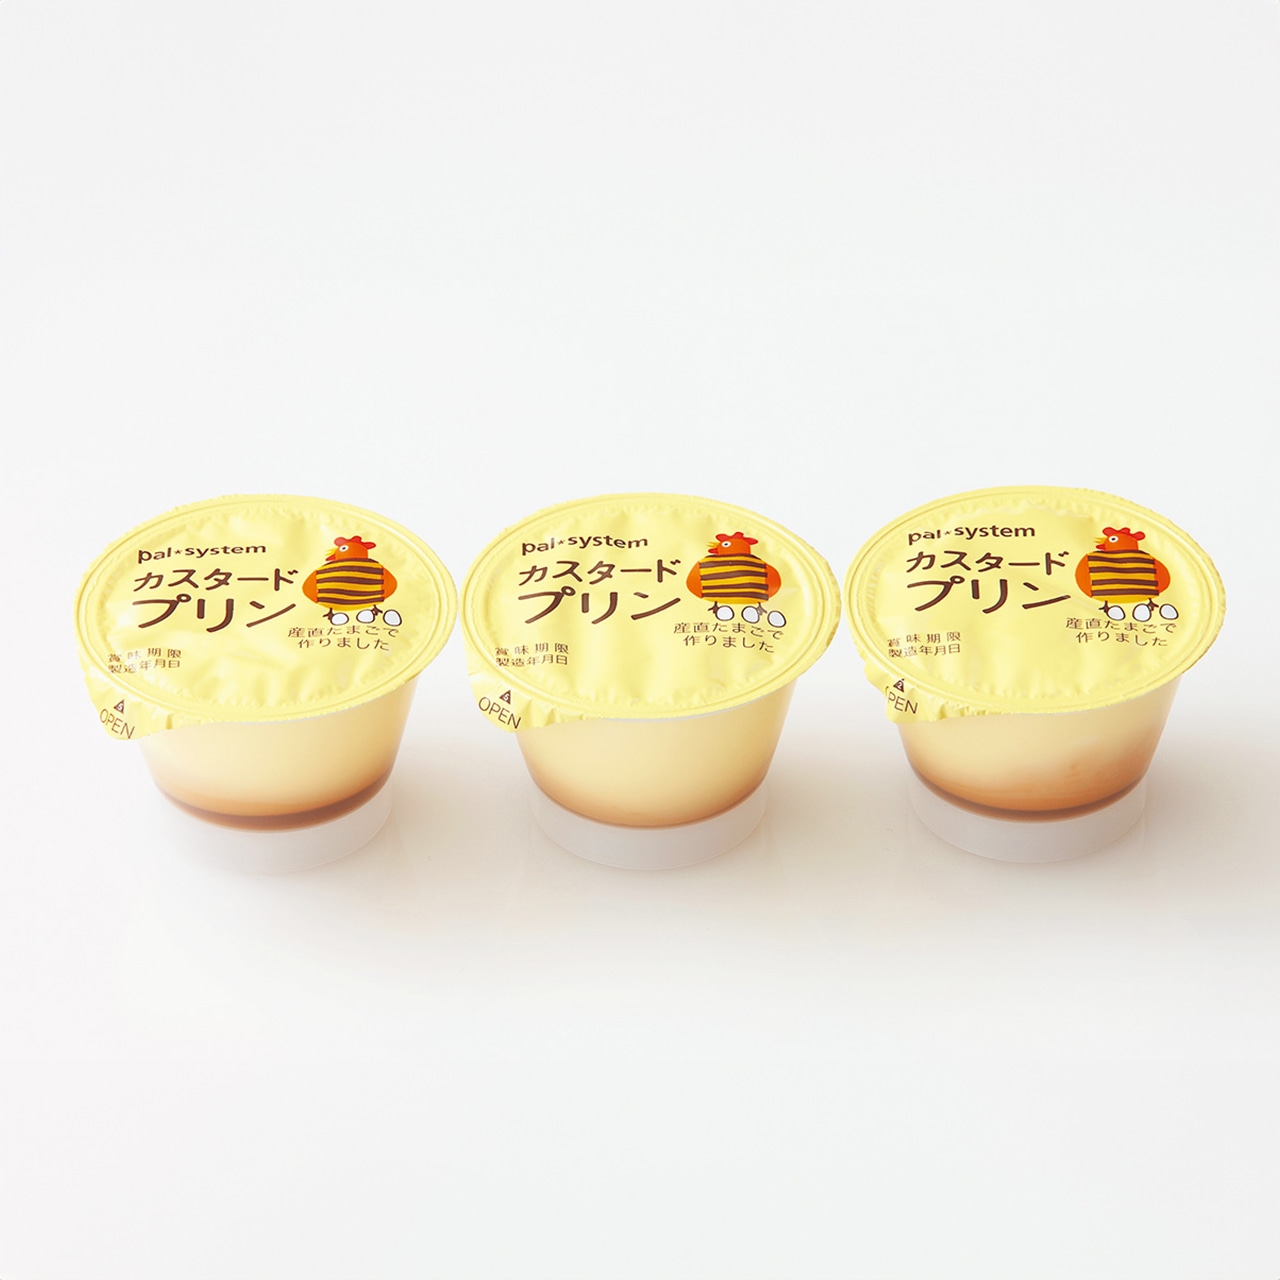 ●カスタードプリン　85g×3個　¥257
原料は、飼料や育て方にこだわった産直たまごと、生乳、砂糖のみ。じっくりと蒸して固めたシンプルなプリンは、卵の新鮮な風味が感じられます。